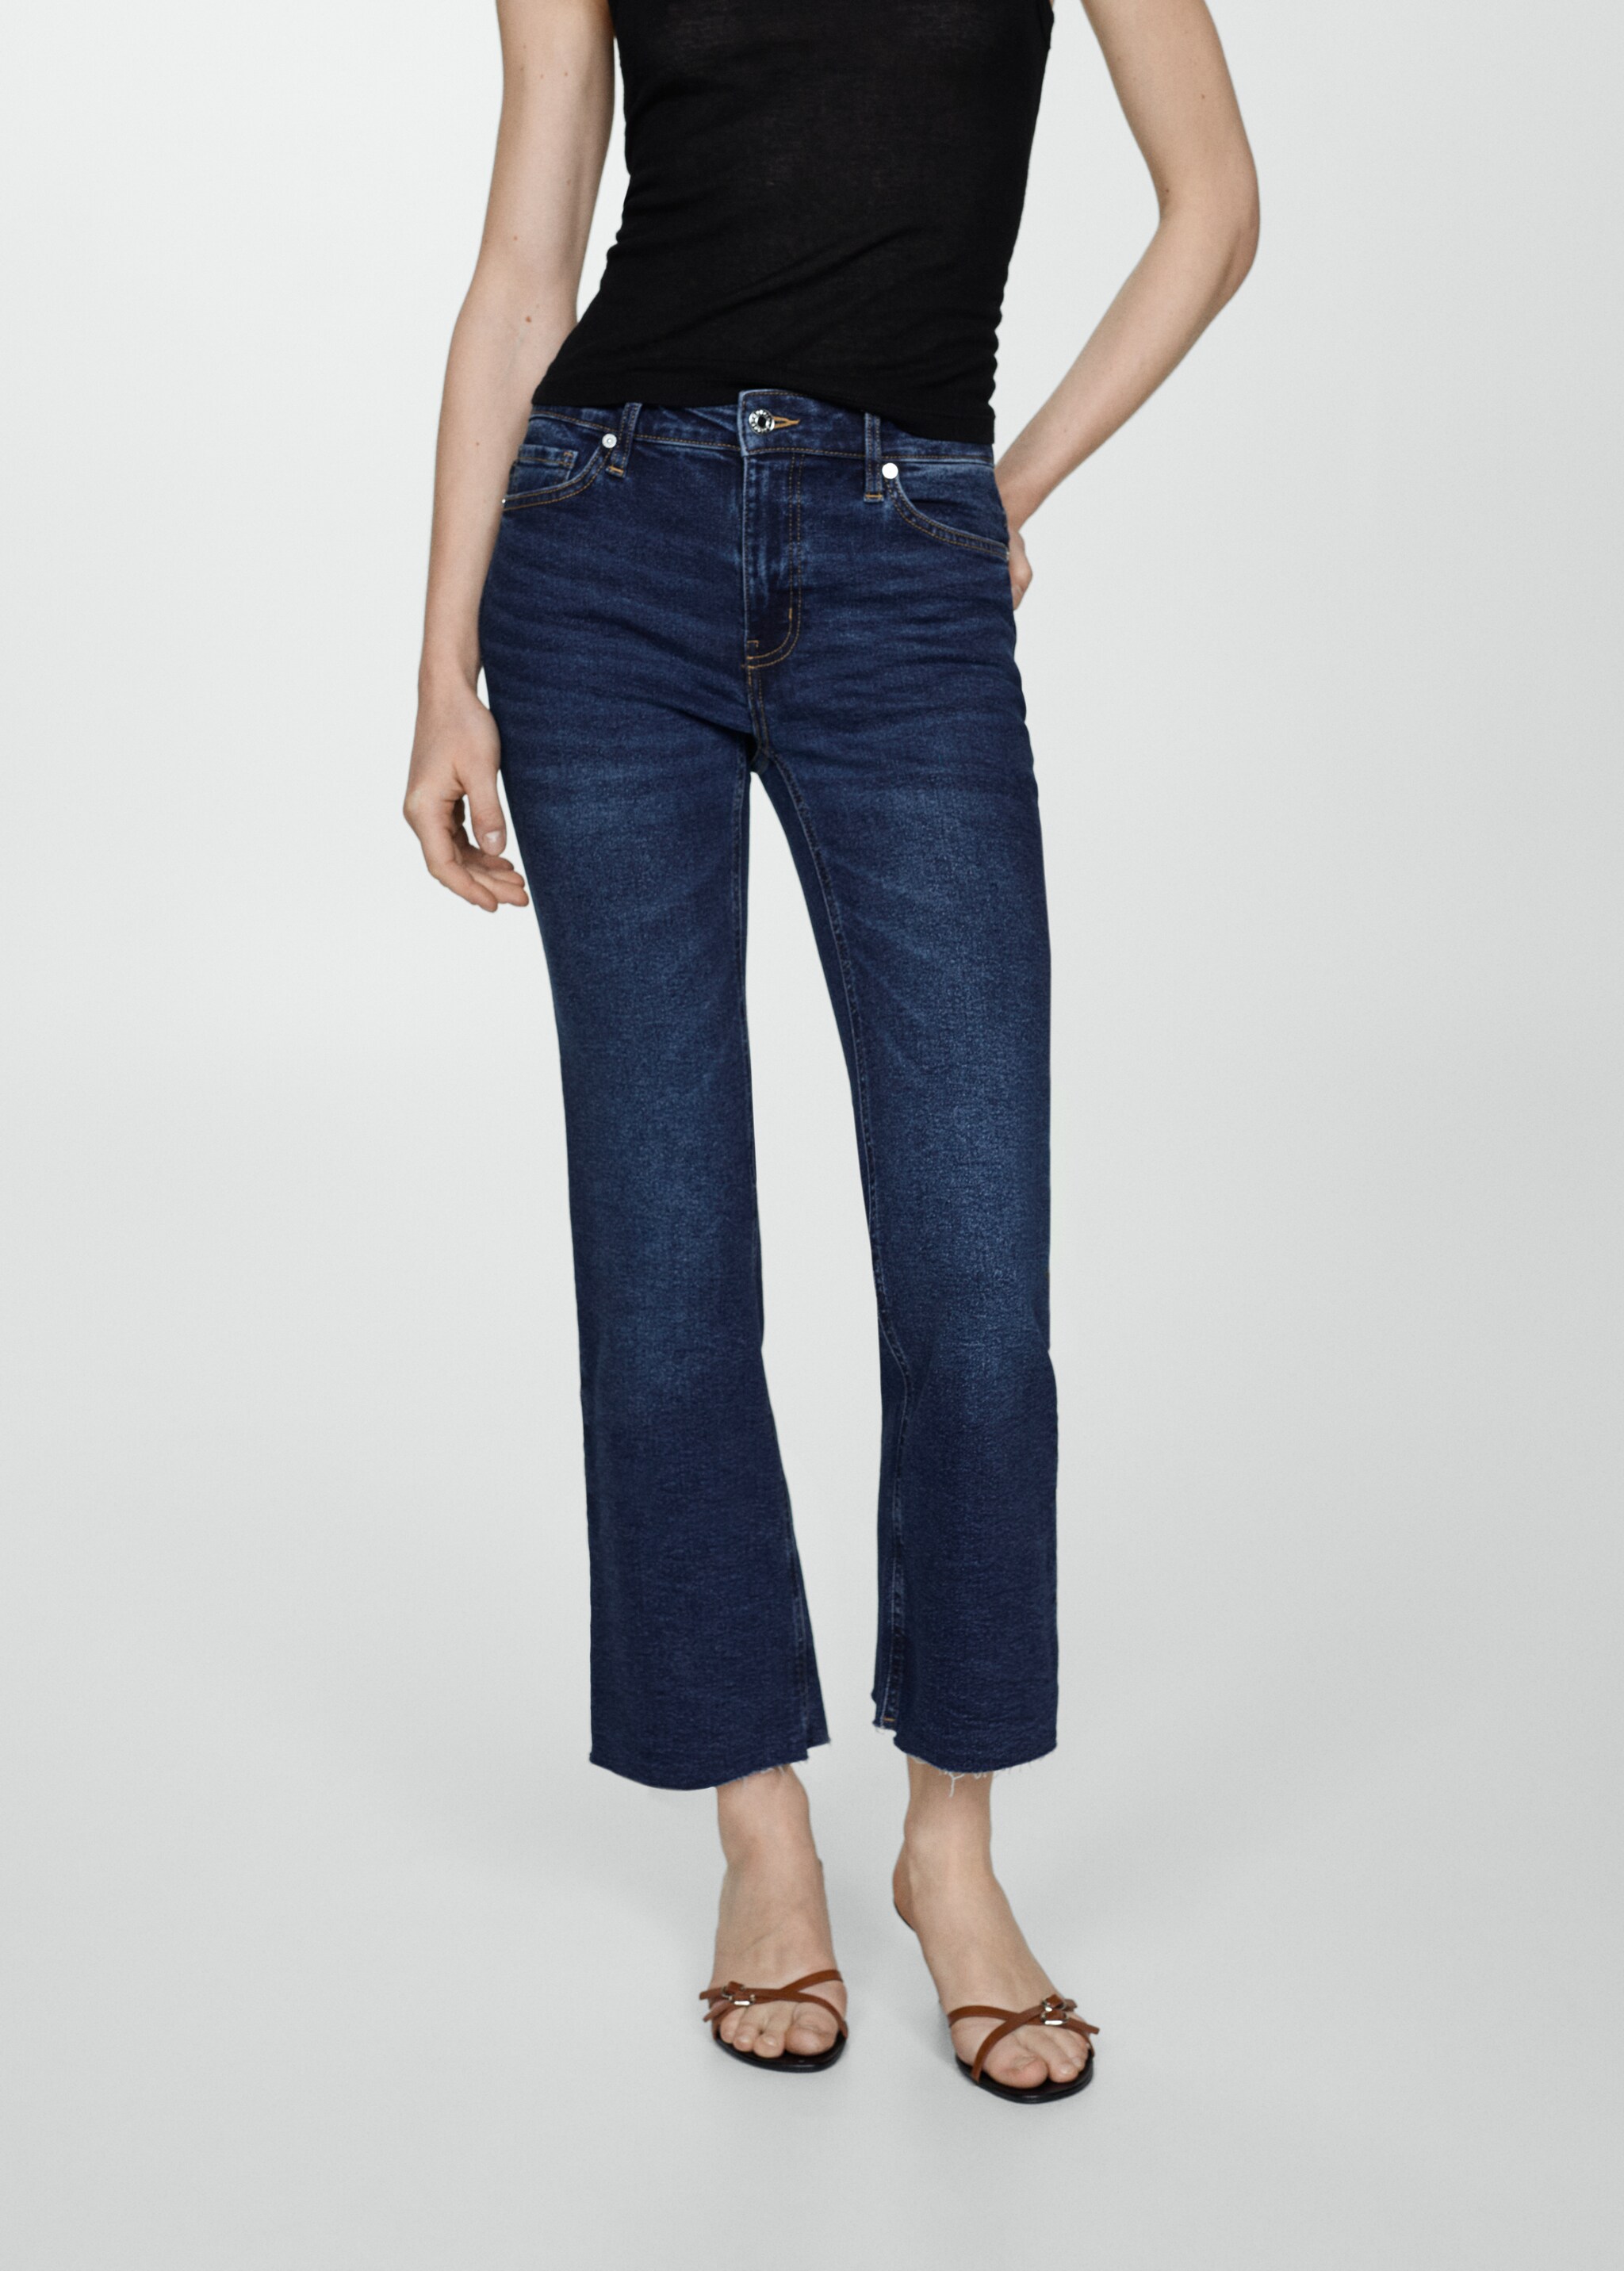 Укороченные джинсы flare - Средний план